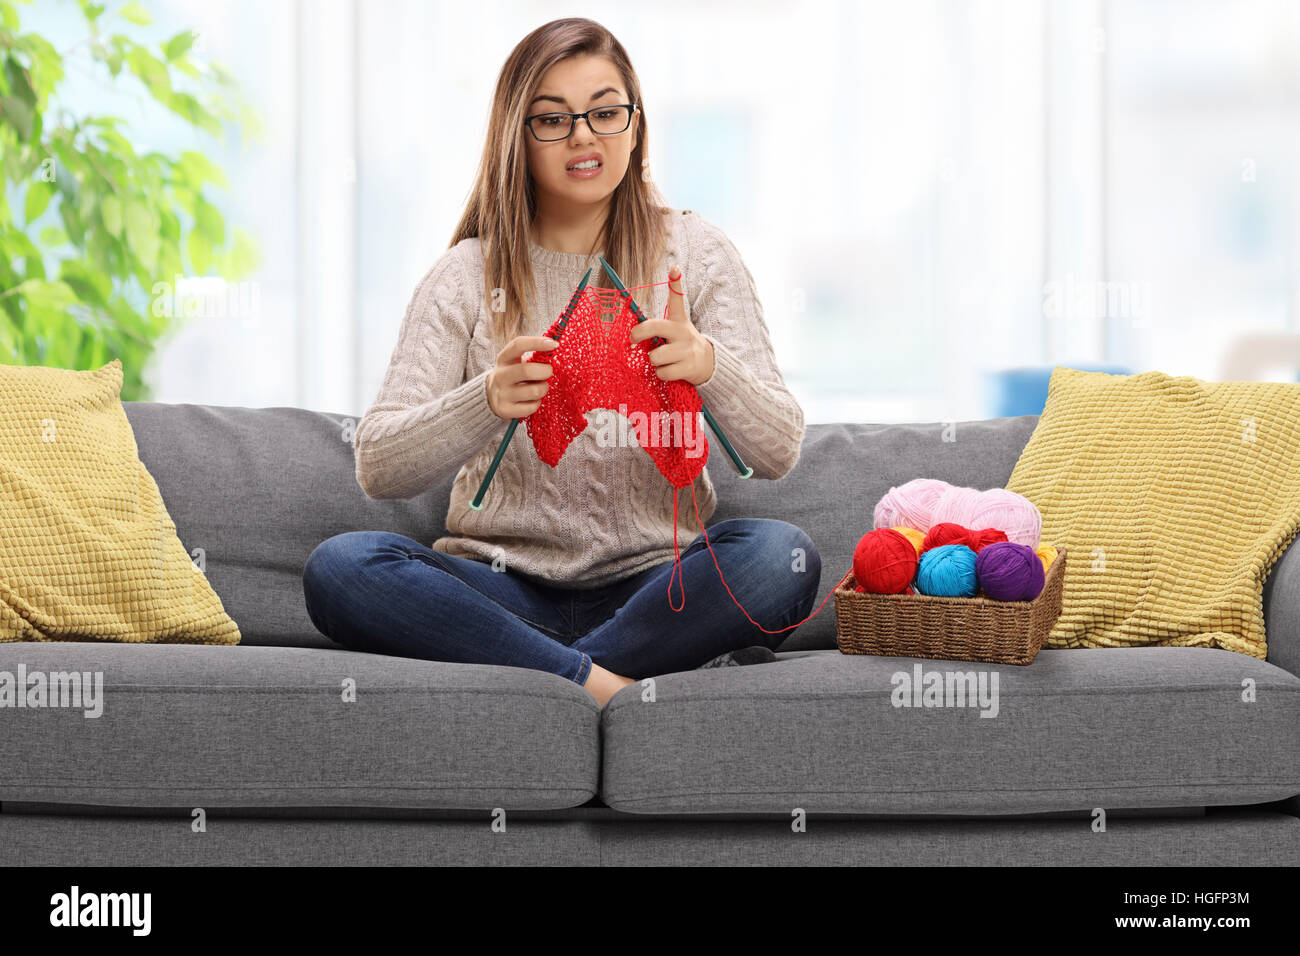 Verwirrt junge Frau auf einem Sofa sitzen und stricken Stockfoto